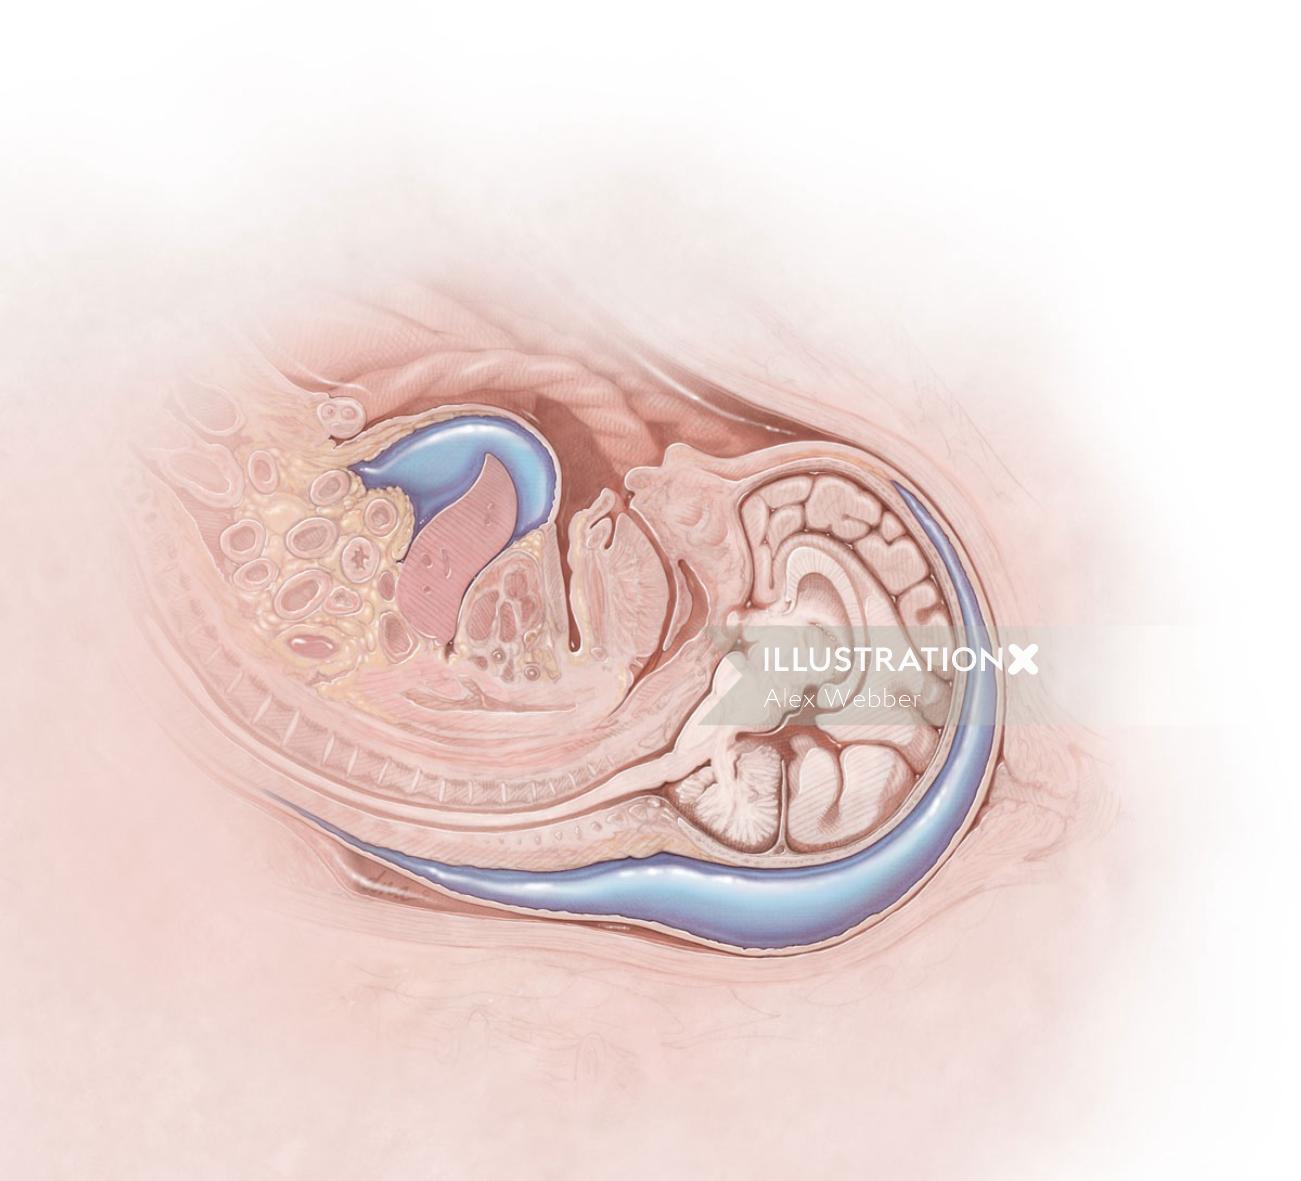 Alex Webber による Medical Magazine の胎児水腫のコンセプト アート